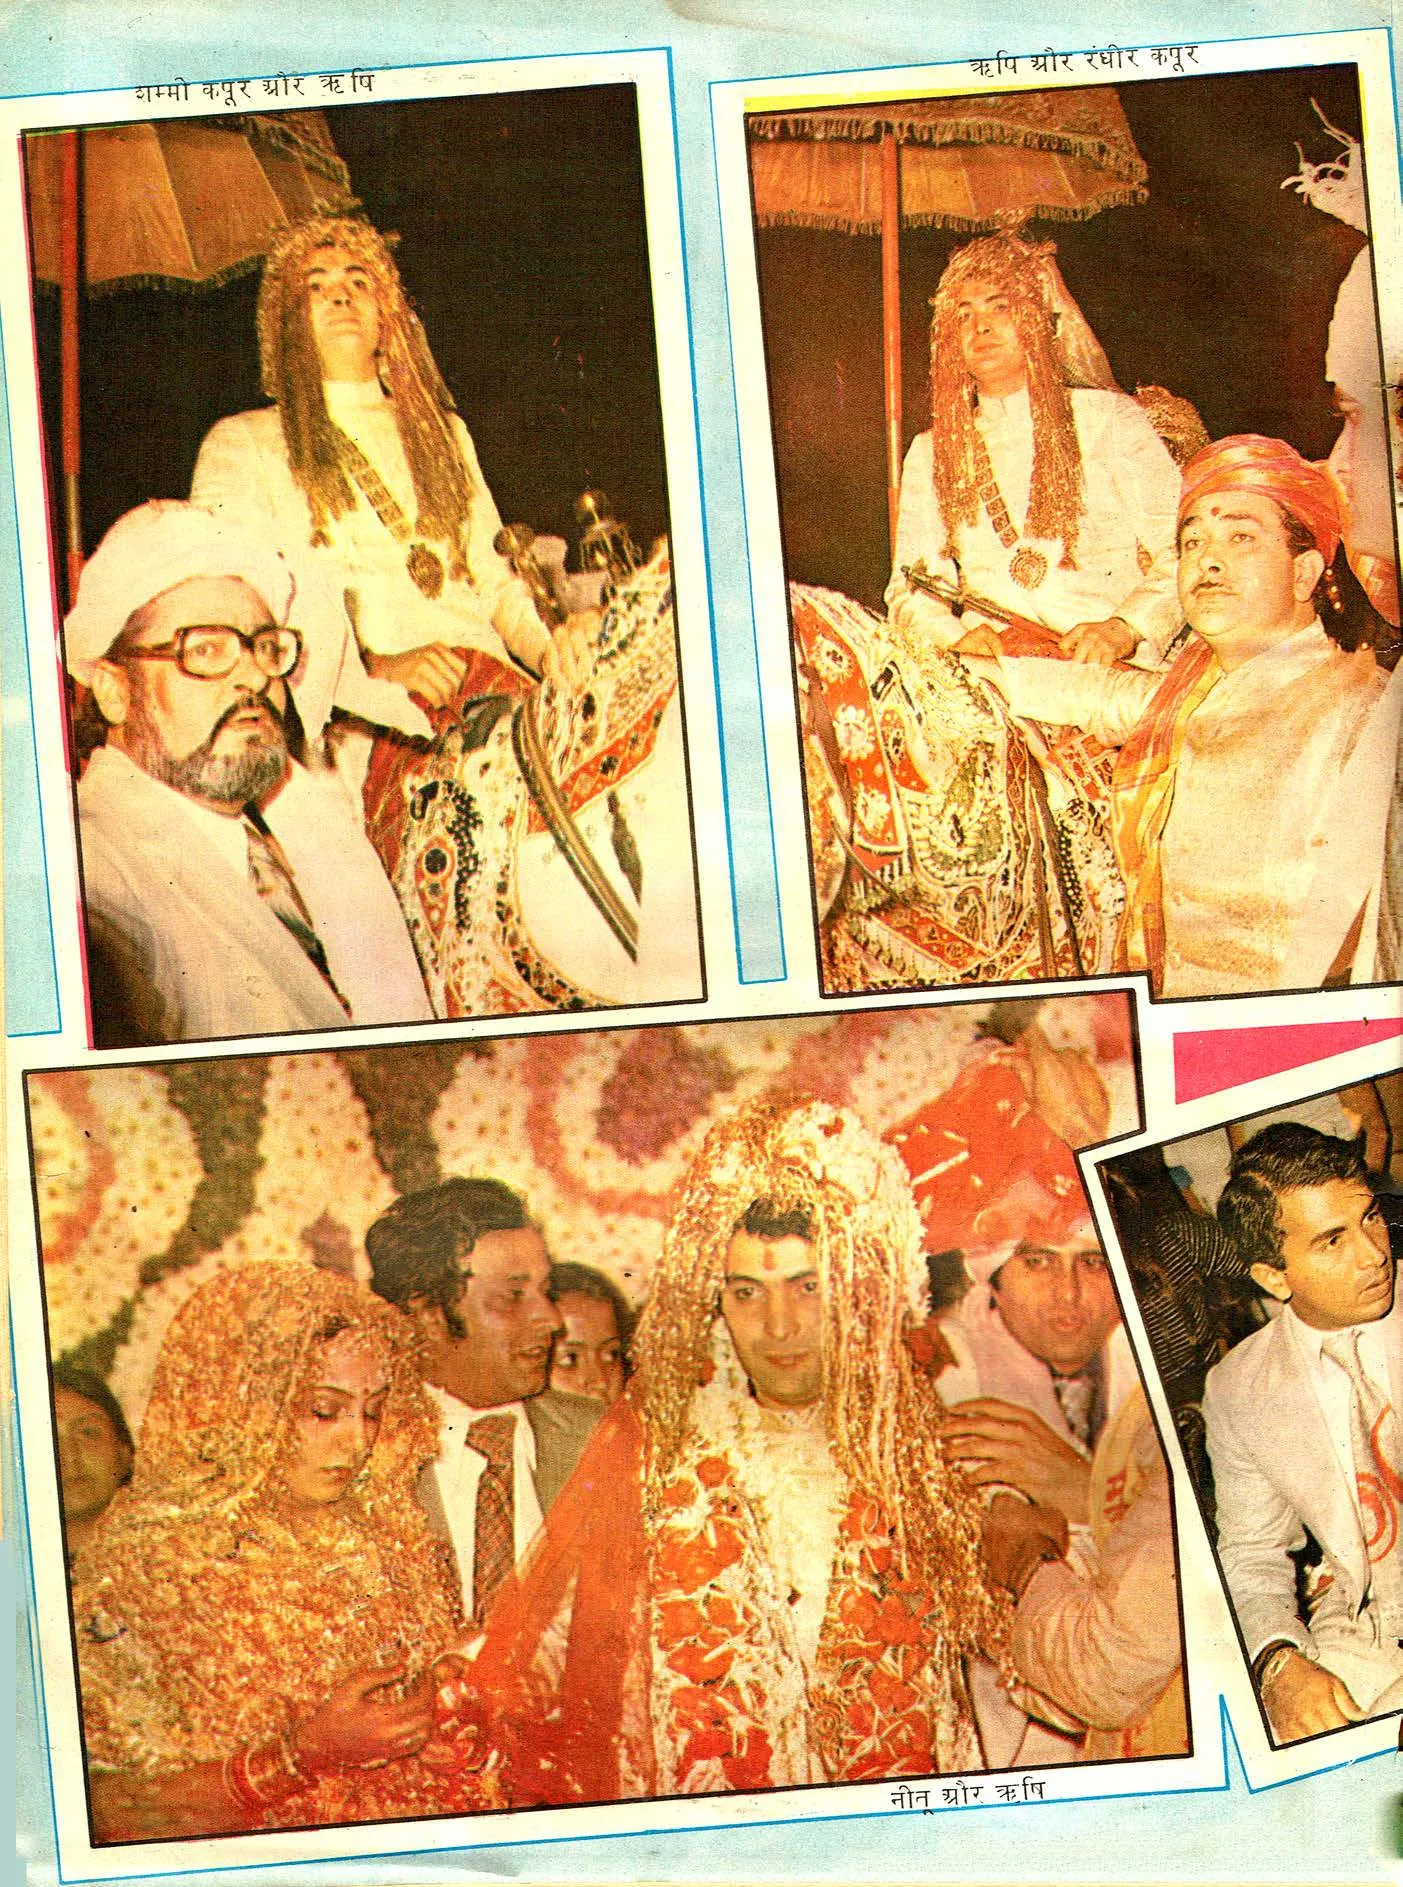 22 जनवरी, 1980 को हुई थी ऋषि कपूर और नीतू की शादी, मीडिया से केवल मायापुरी के रिपोर्टर हुए थे शामिल, देखें अनदेखी तस्वीरें